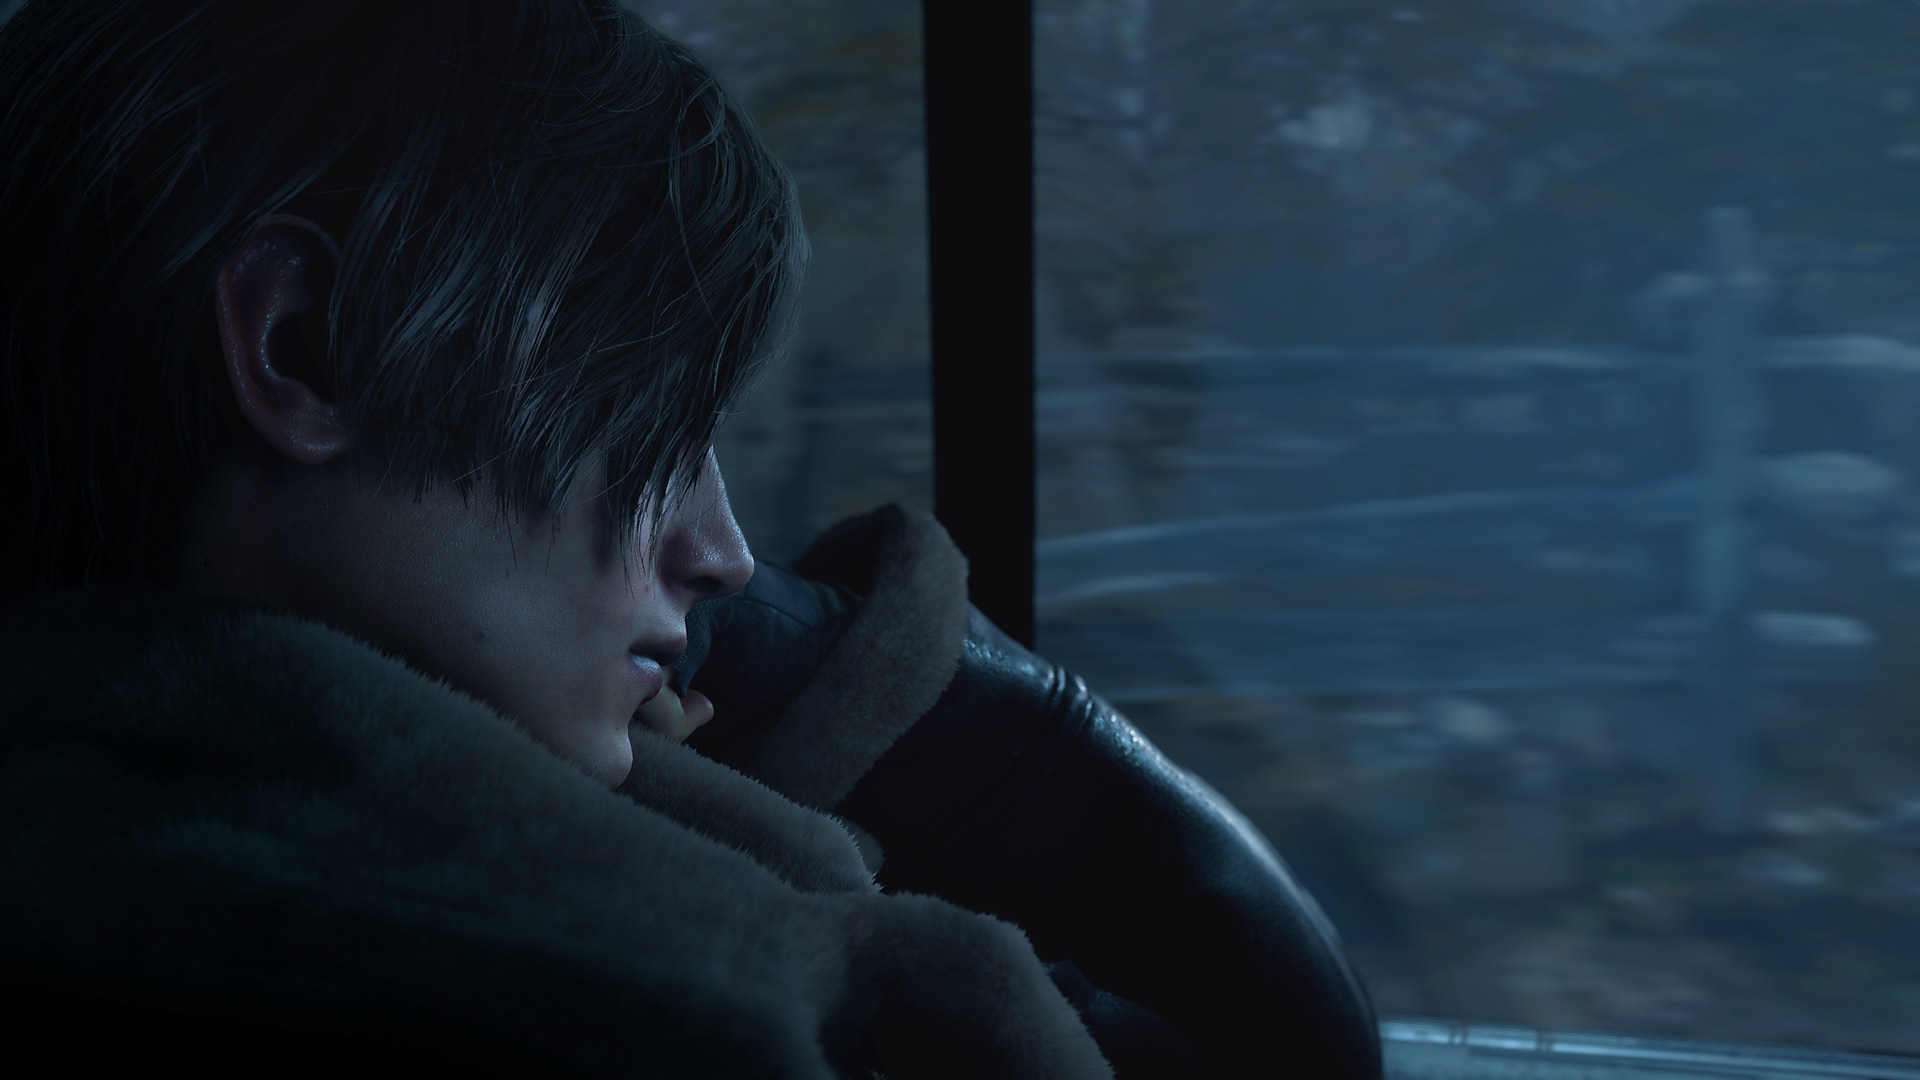 Capture d'écran de Resident Evil 4 - Leon Kennedy à l'arrière d'une voiture